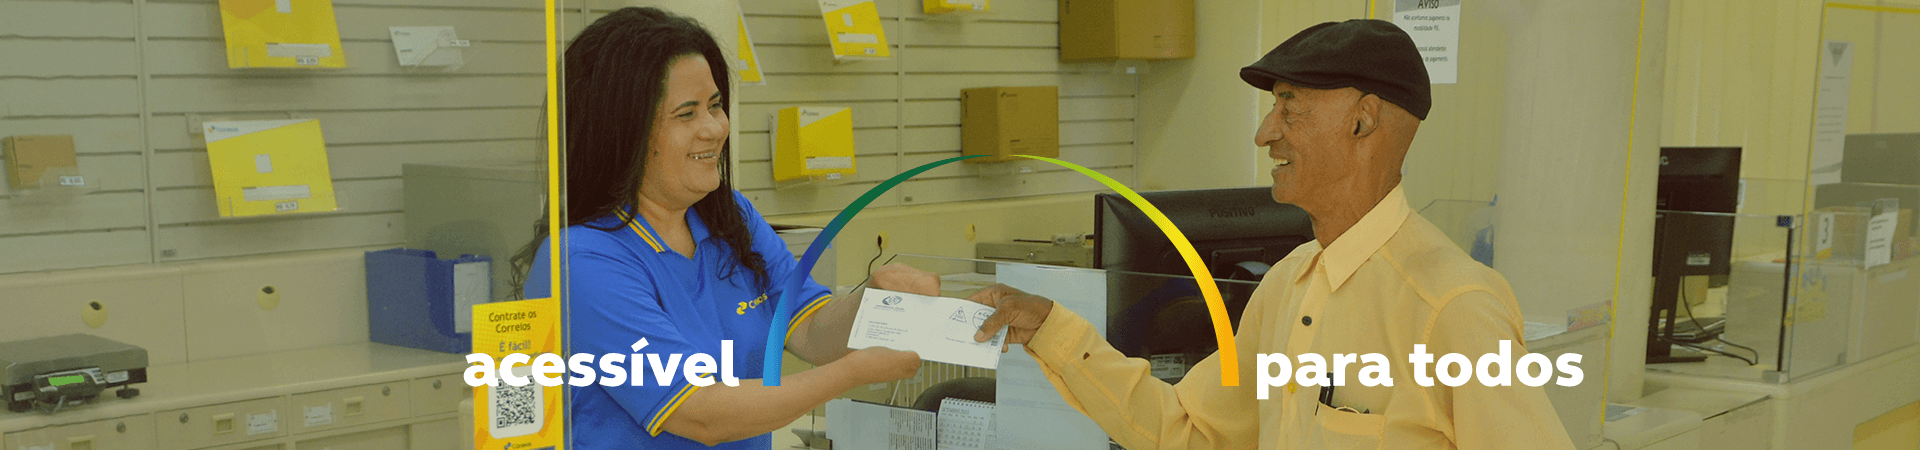 Imagem de uma atendente dos Correios com deficiência, sorrindo e recebendo uma carta de um homem em uma agência dos Correios